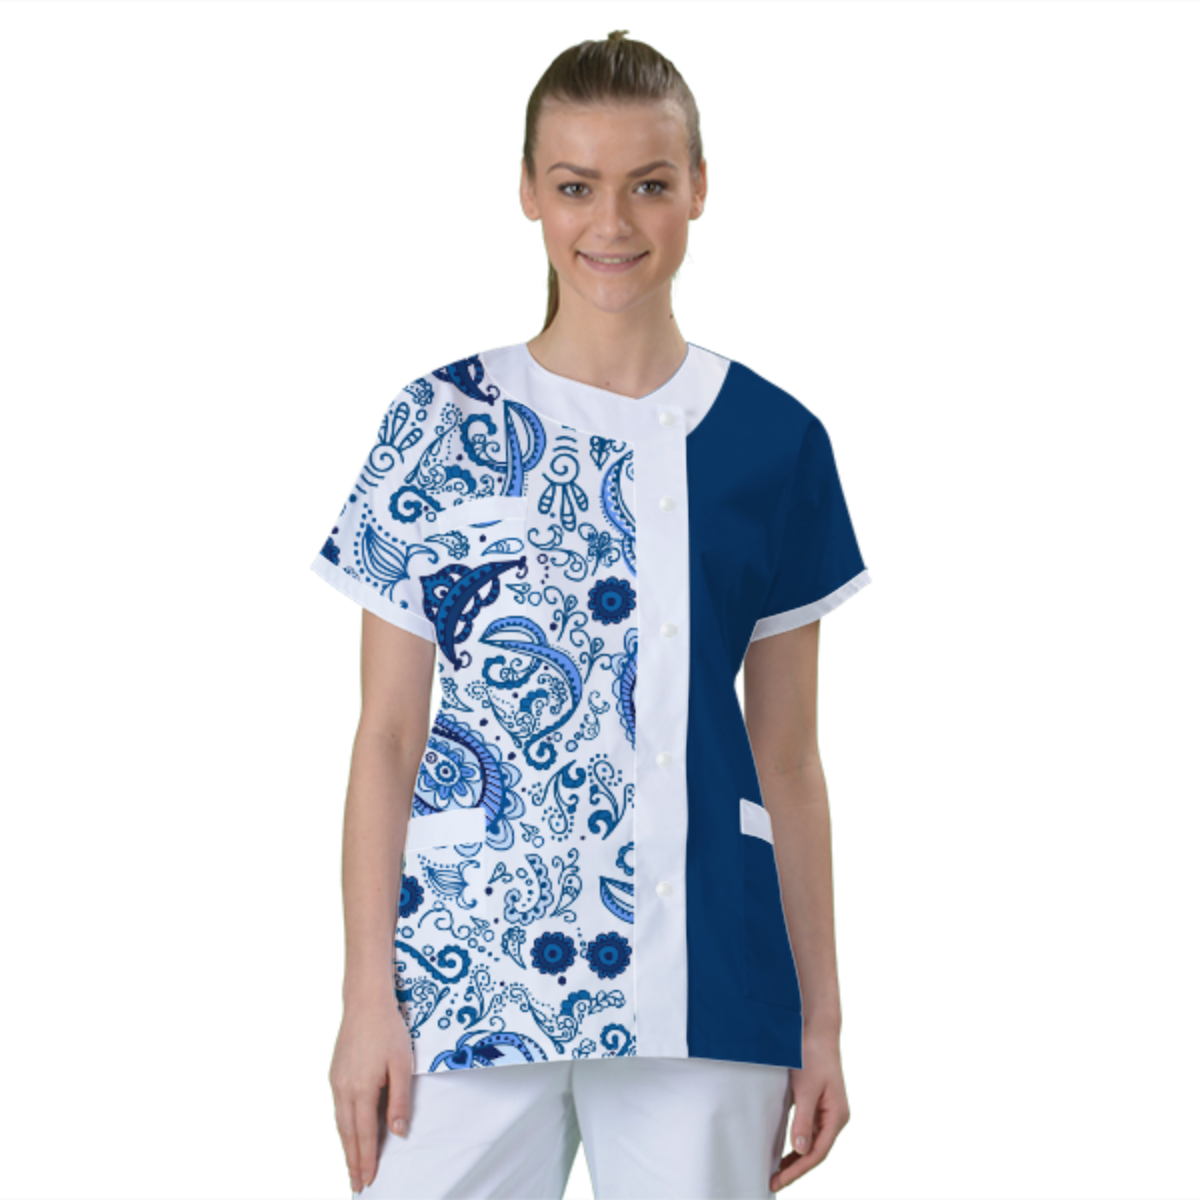 blouse-de-travail-personnalisee-tunique-medicale acheté - par Marianne - le 09-02-2021